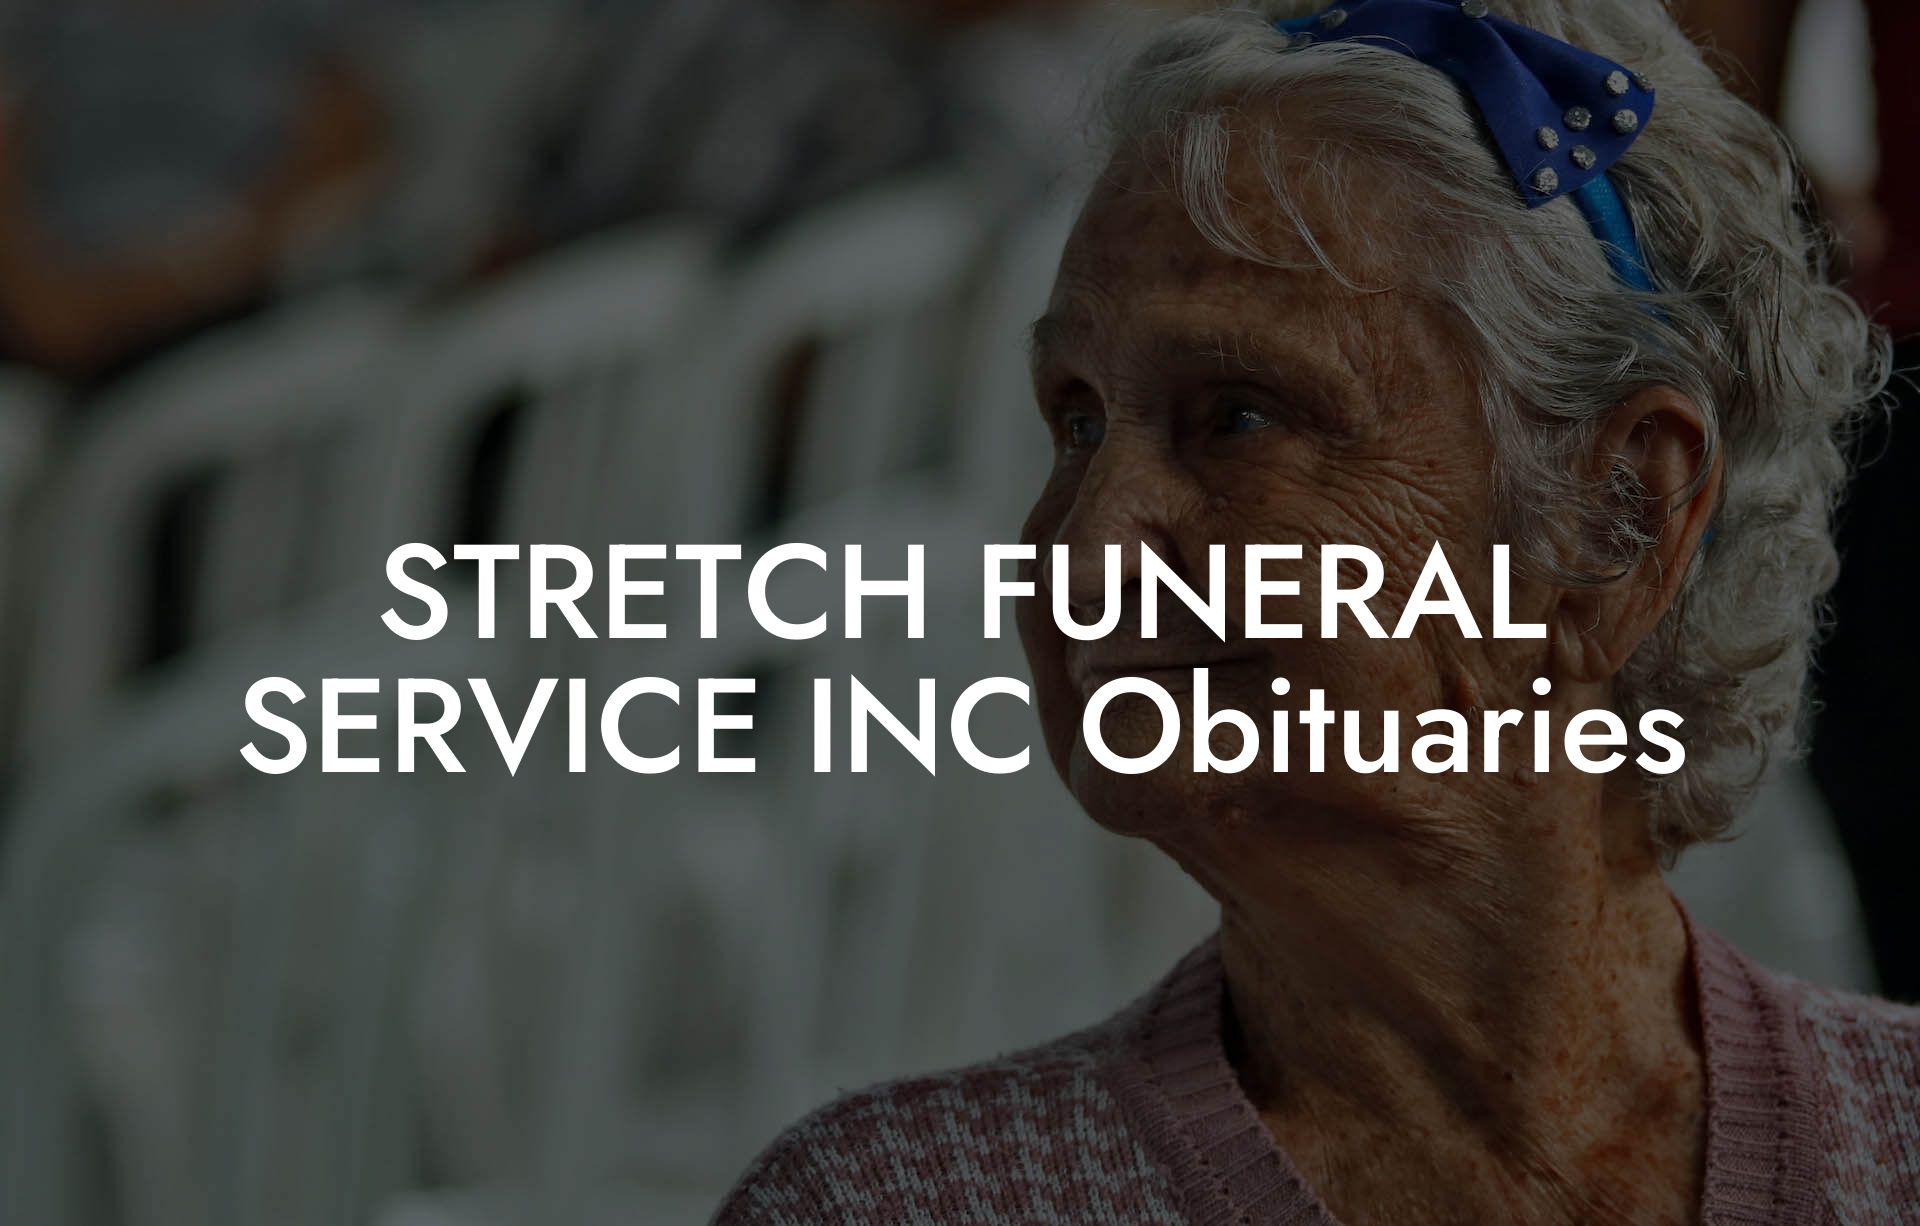 STRETCH FUNERAL SERVICE INC Obituaries